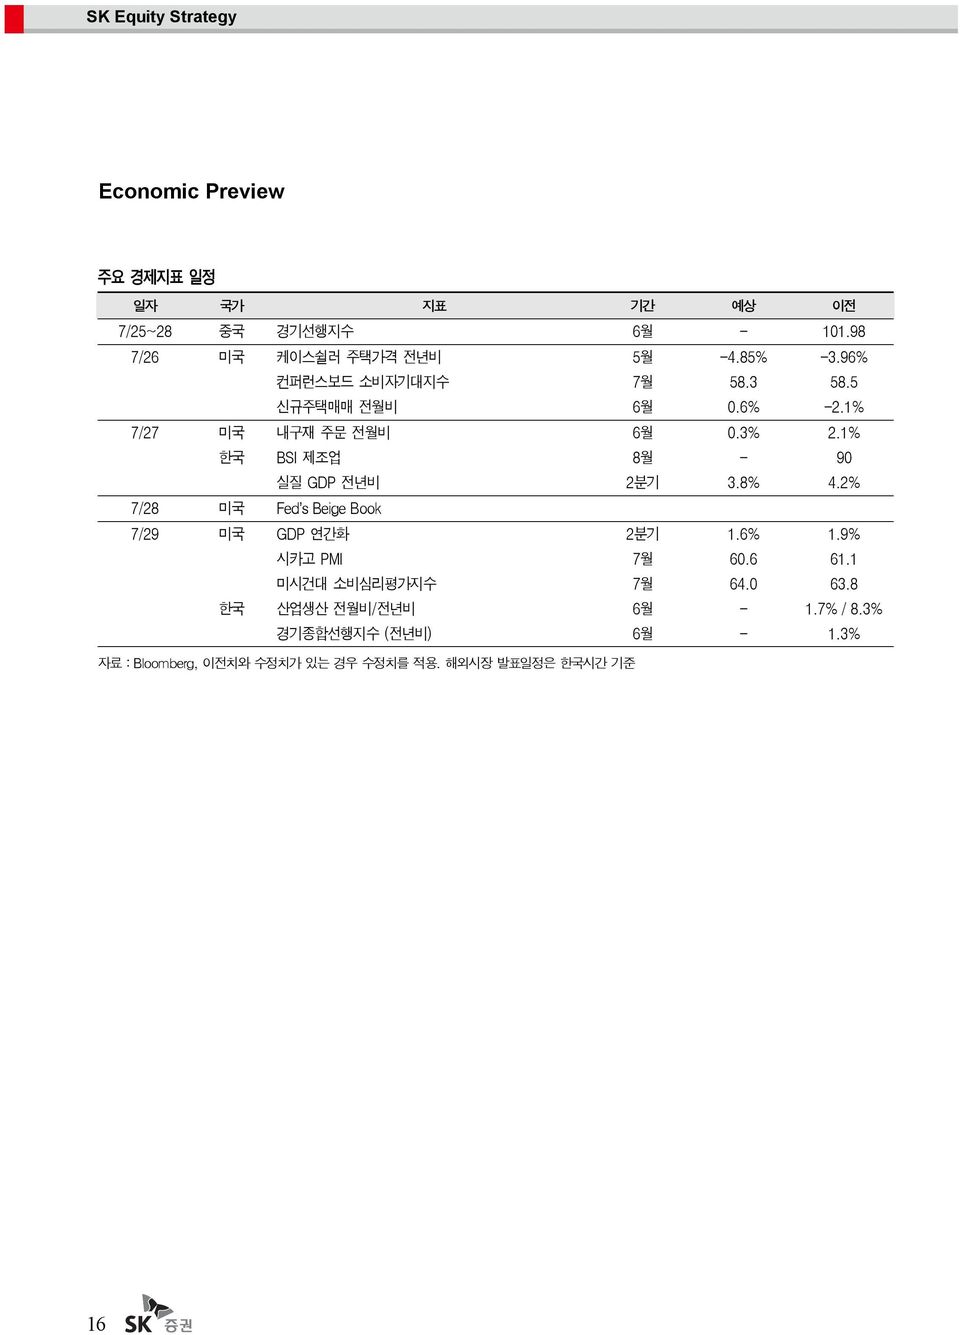 1% 한국 BSI 제조업 8월 - 9 실질 GDP 전년비 2분기 3.8% 4.2% 7/28 미국 Fed s Beige Book 7/29 미국 GDP 연간화 2분기 1.6% 1.9% 시카고 PMI 7월 6.